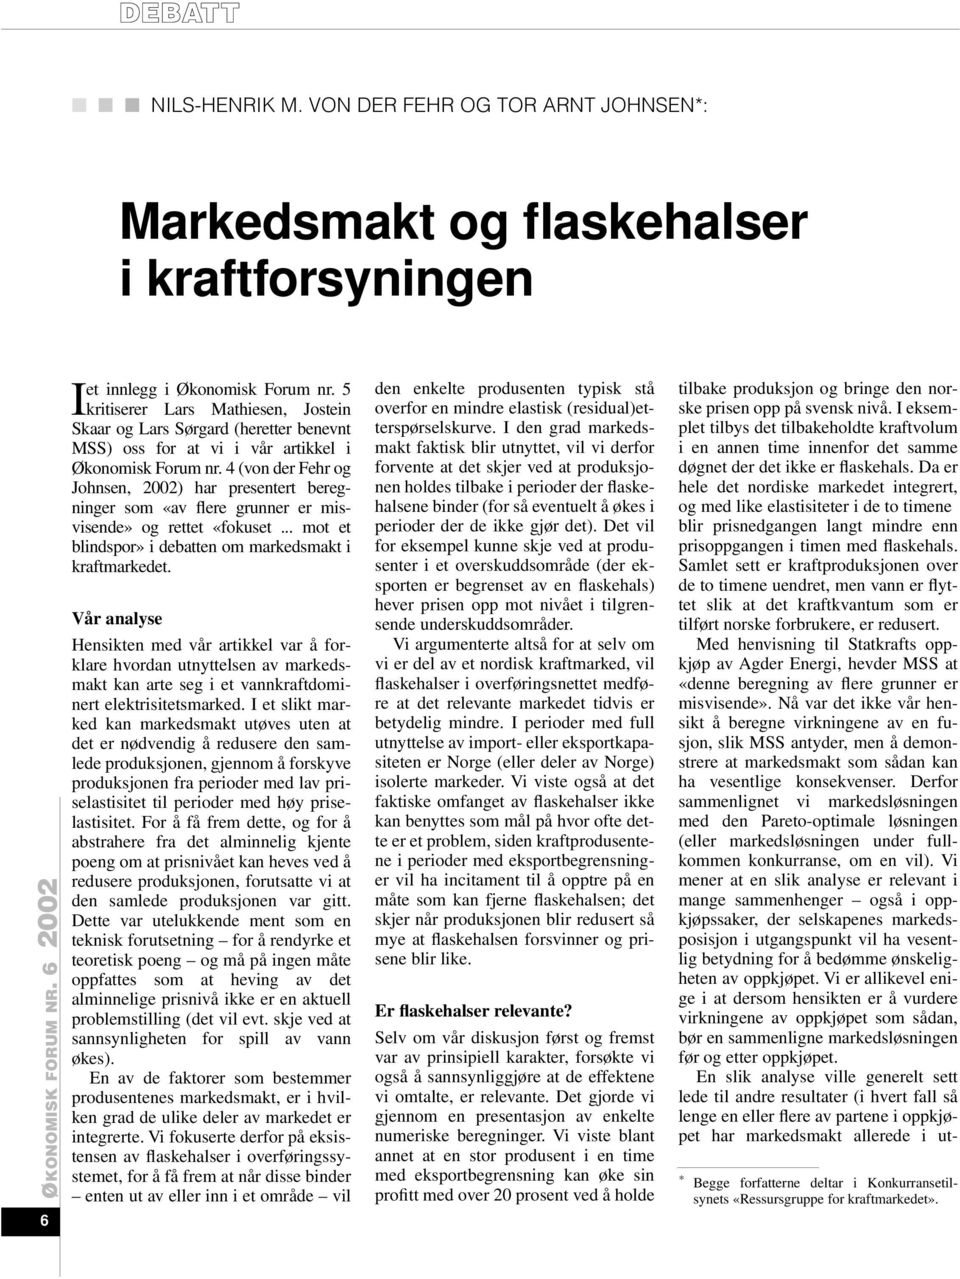 4 (von der Fehr og Johnsen, 2002) har presentert beregninger som «av flere grunner er misvisende» og rettet «fokuset... mot et blindspor» i debatten om markedsmakt i kraftmarkedet.